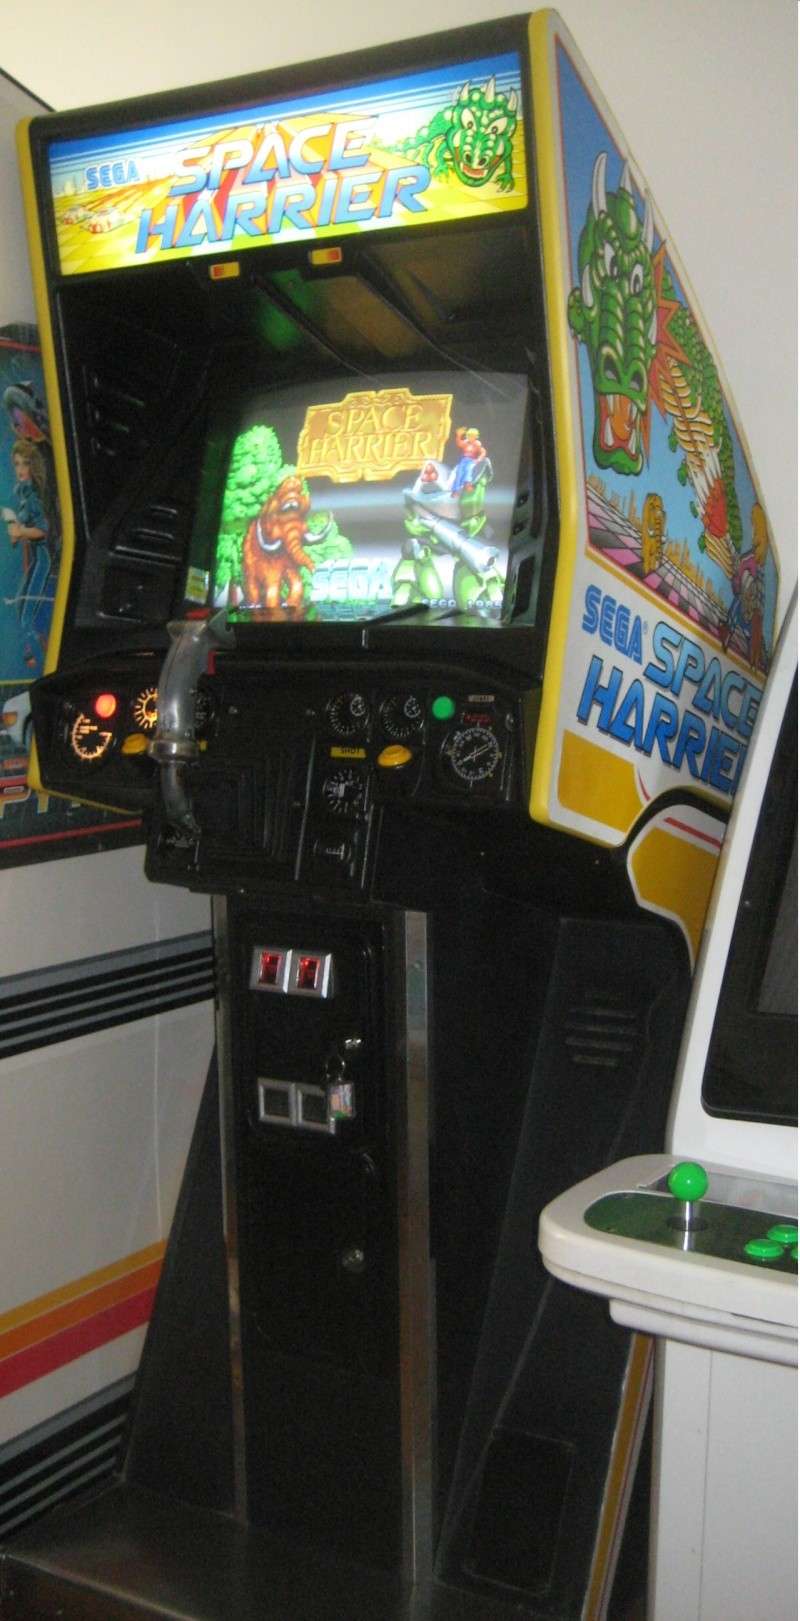 borne arcade space harrier